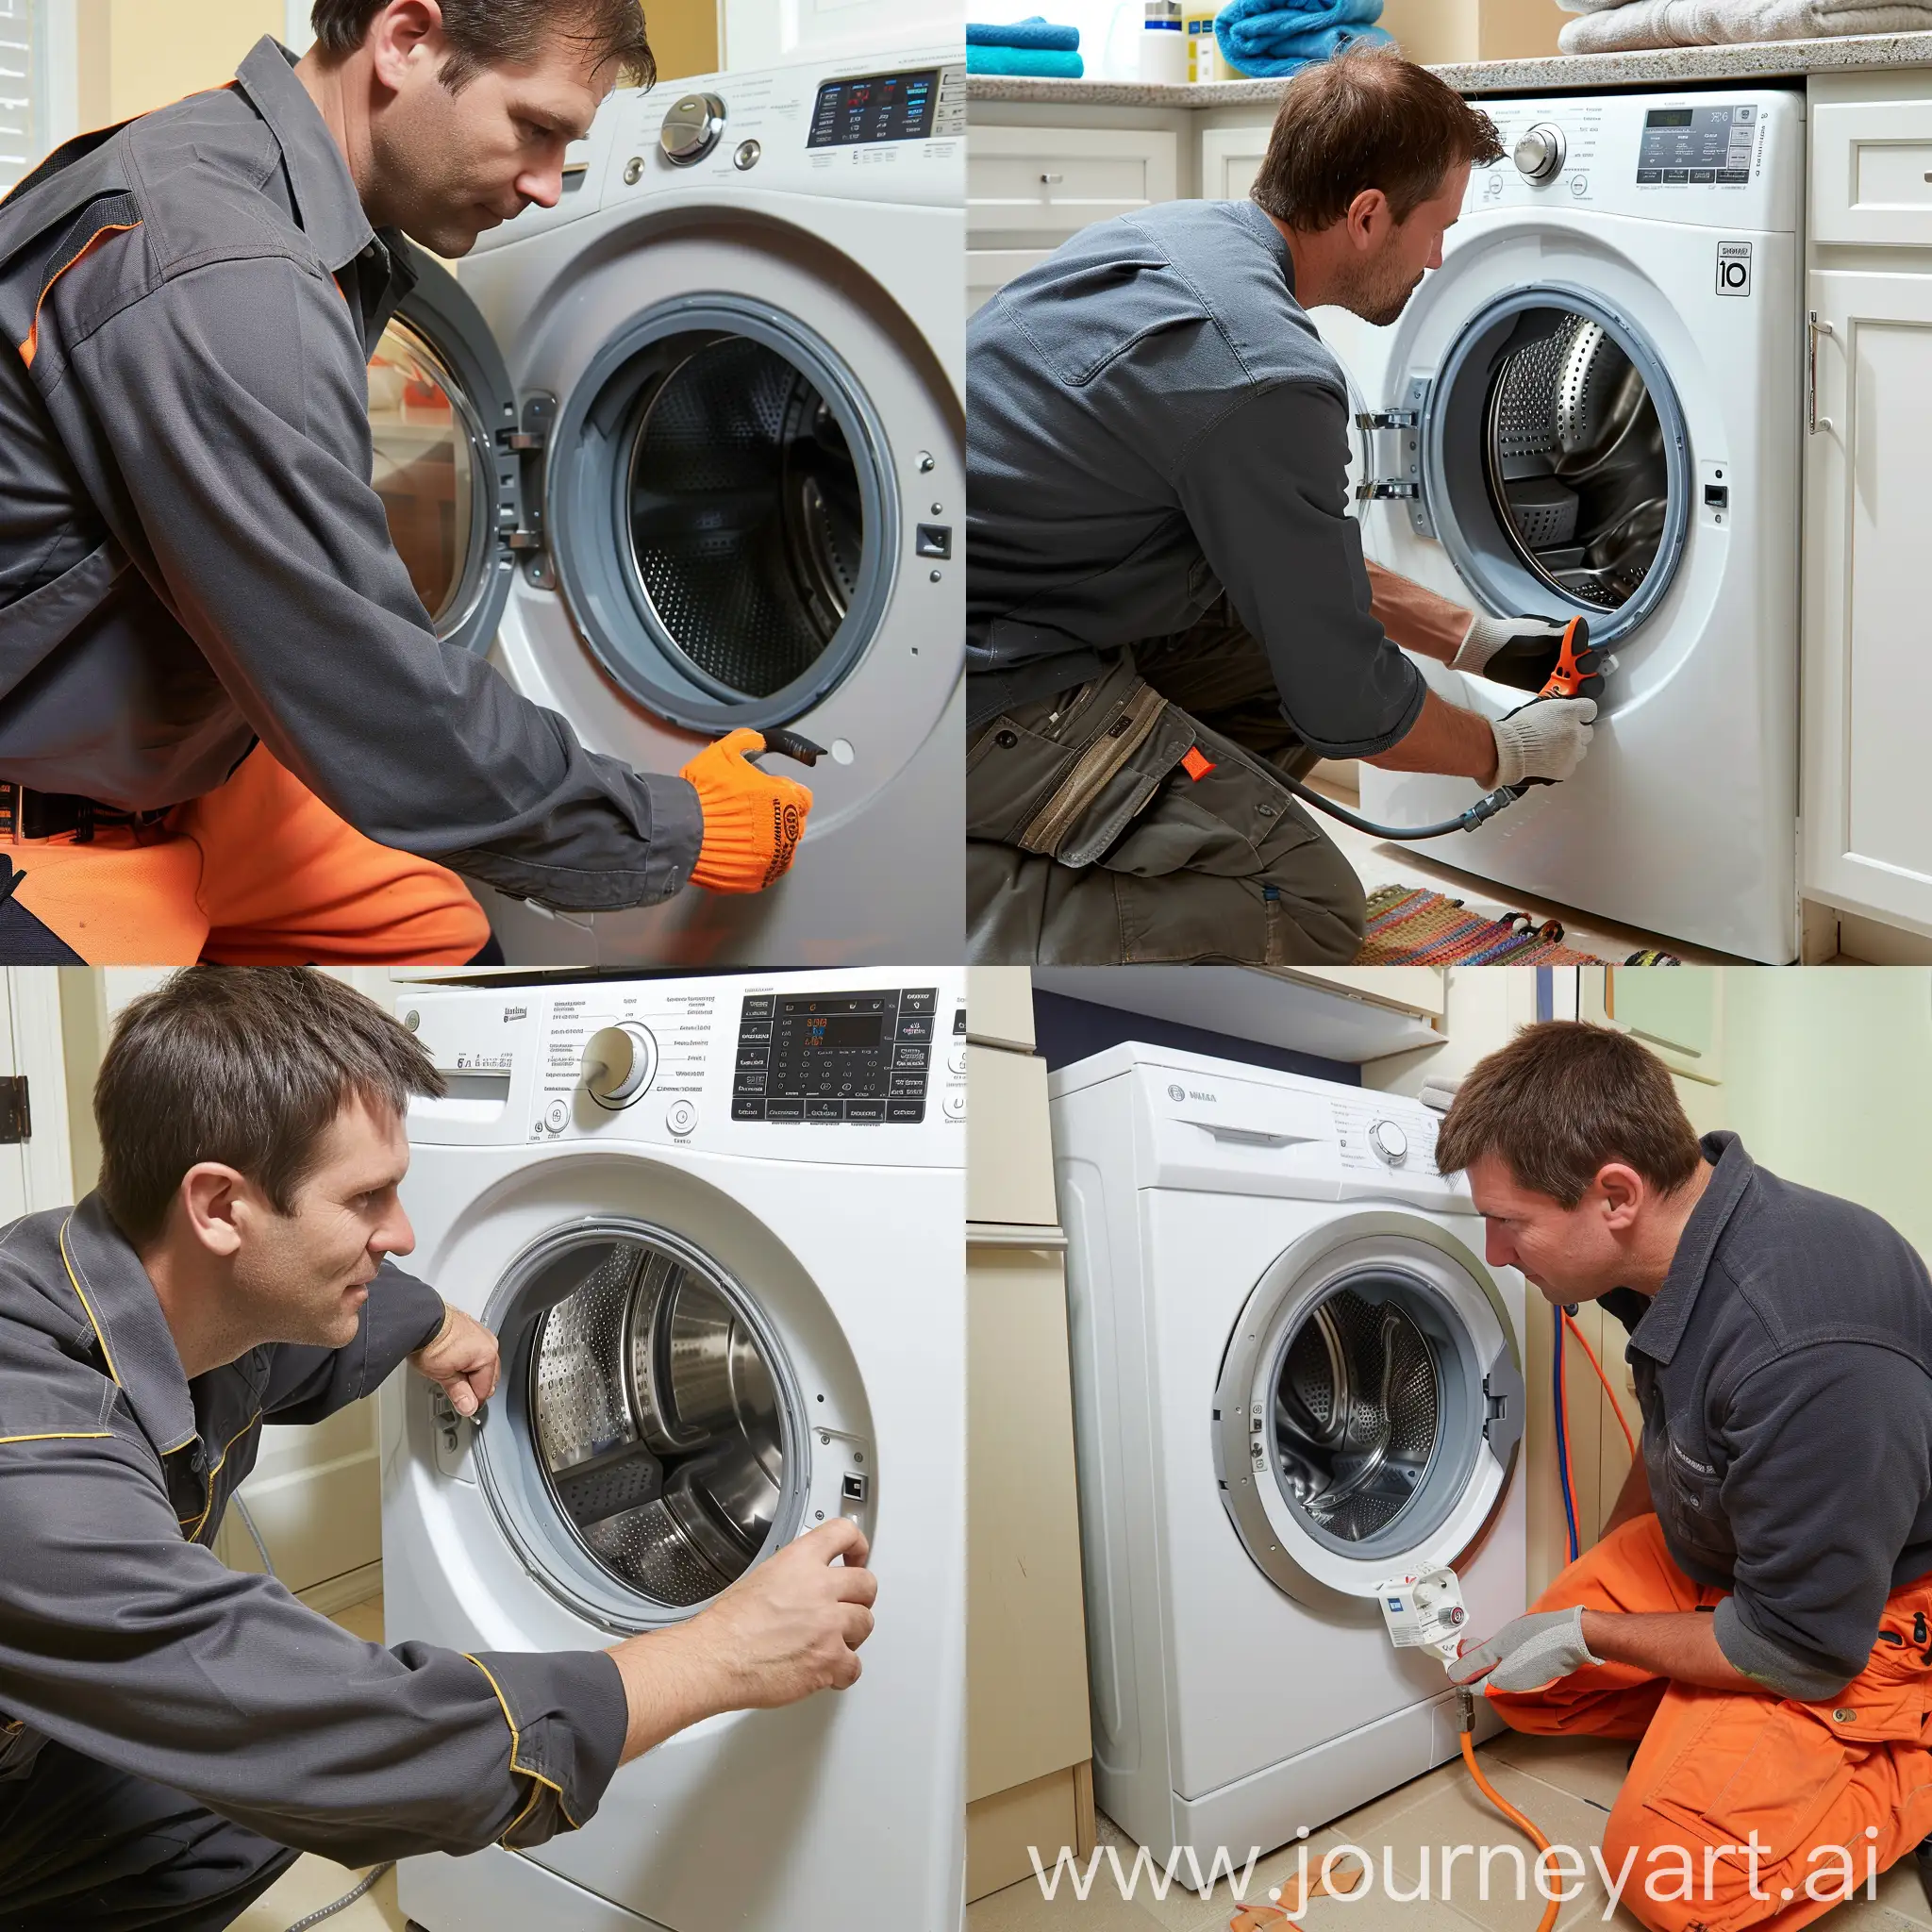 Plumber-Repairing-Washing-Machine-Expert-Plumbing-Service-in-Action